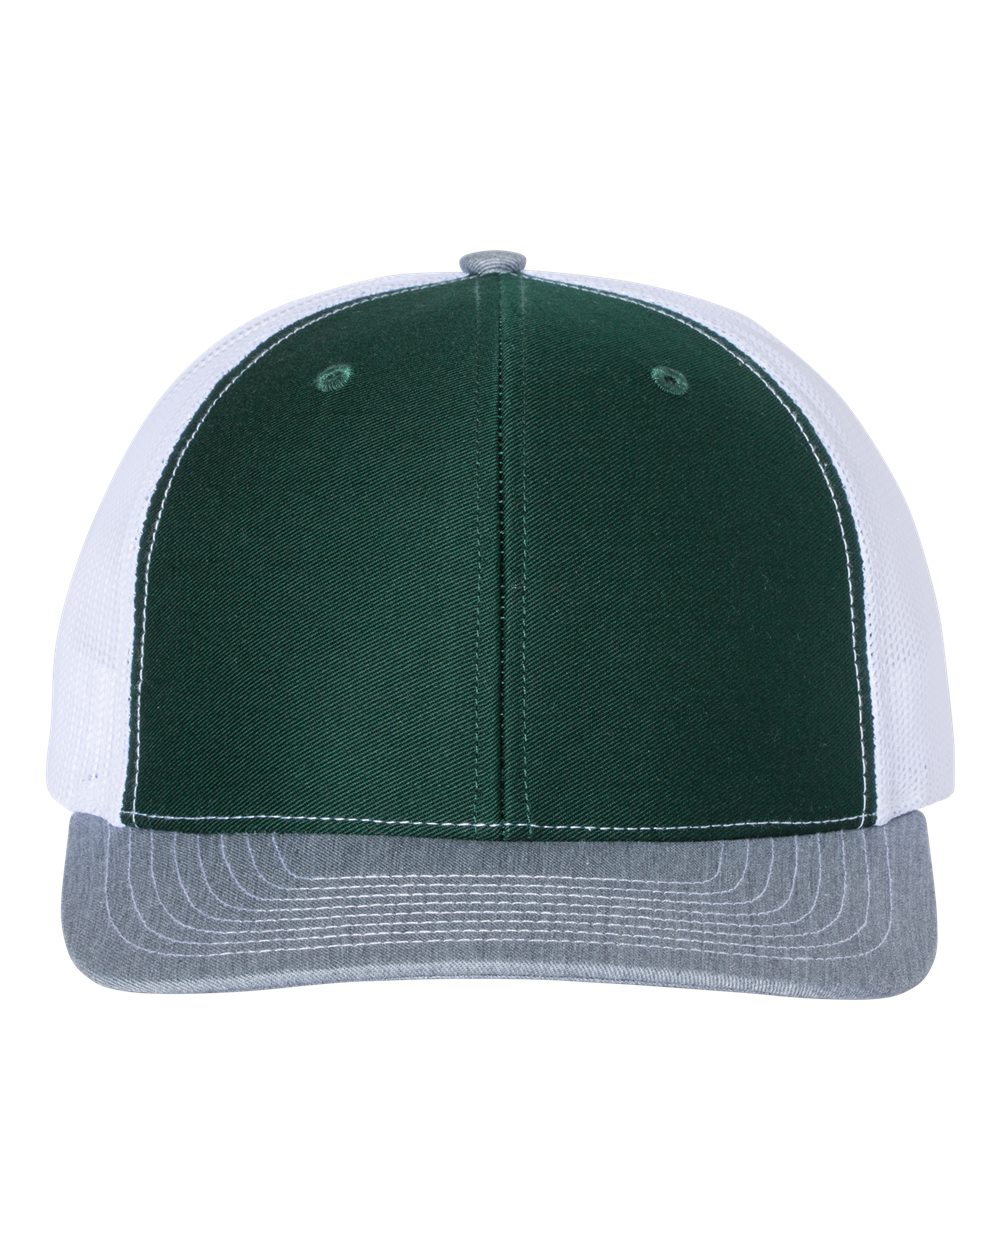 Richardson Snapback Trucker Hat (112) in Dark Green/White/Heather Grey